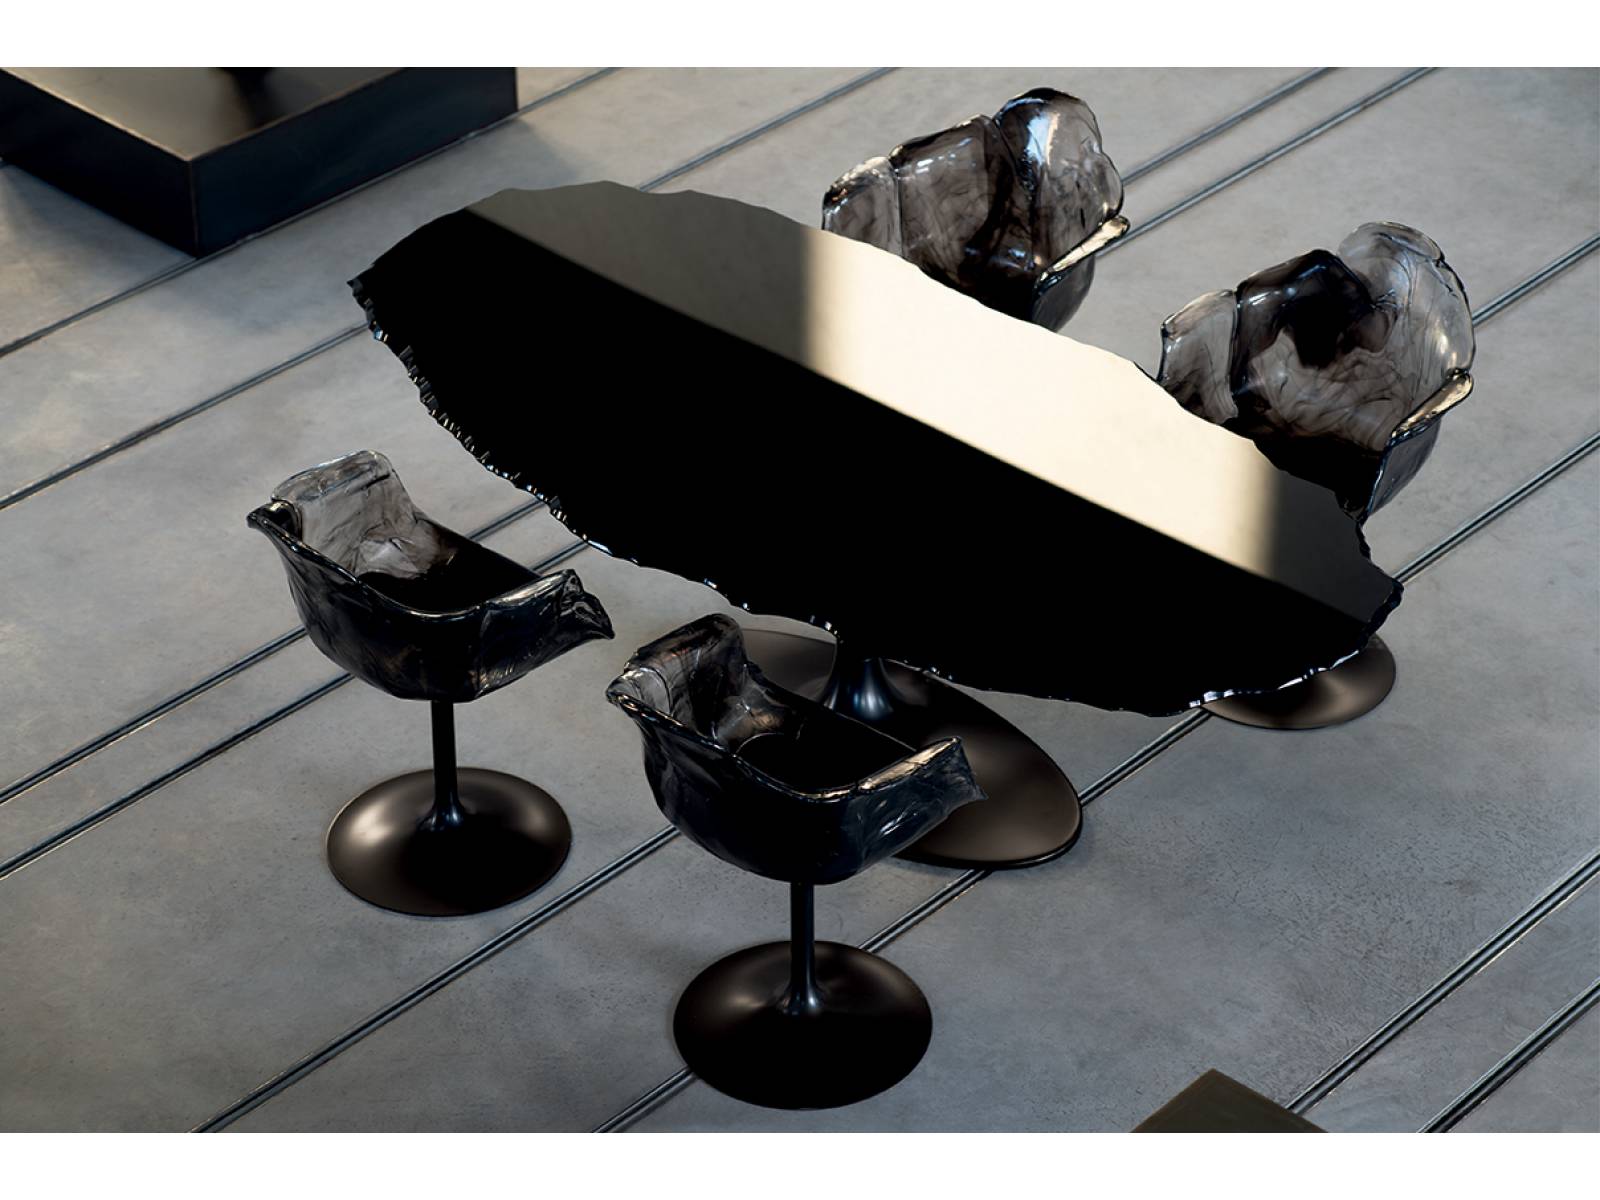 2017 stellte Jacopo Foggini das ausgefallene Sitzmöbel aus Polycarbonat zum ersten Mal vor. Die transparente Sitzschale, die sich wie eine grazile Blüte auf einem Fuss aus Metall entfaltet, wurde am diesjährigen Salone del Mobile in Anthrazit-Schwarz-Tönen gezeigt. Edra.